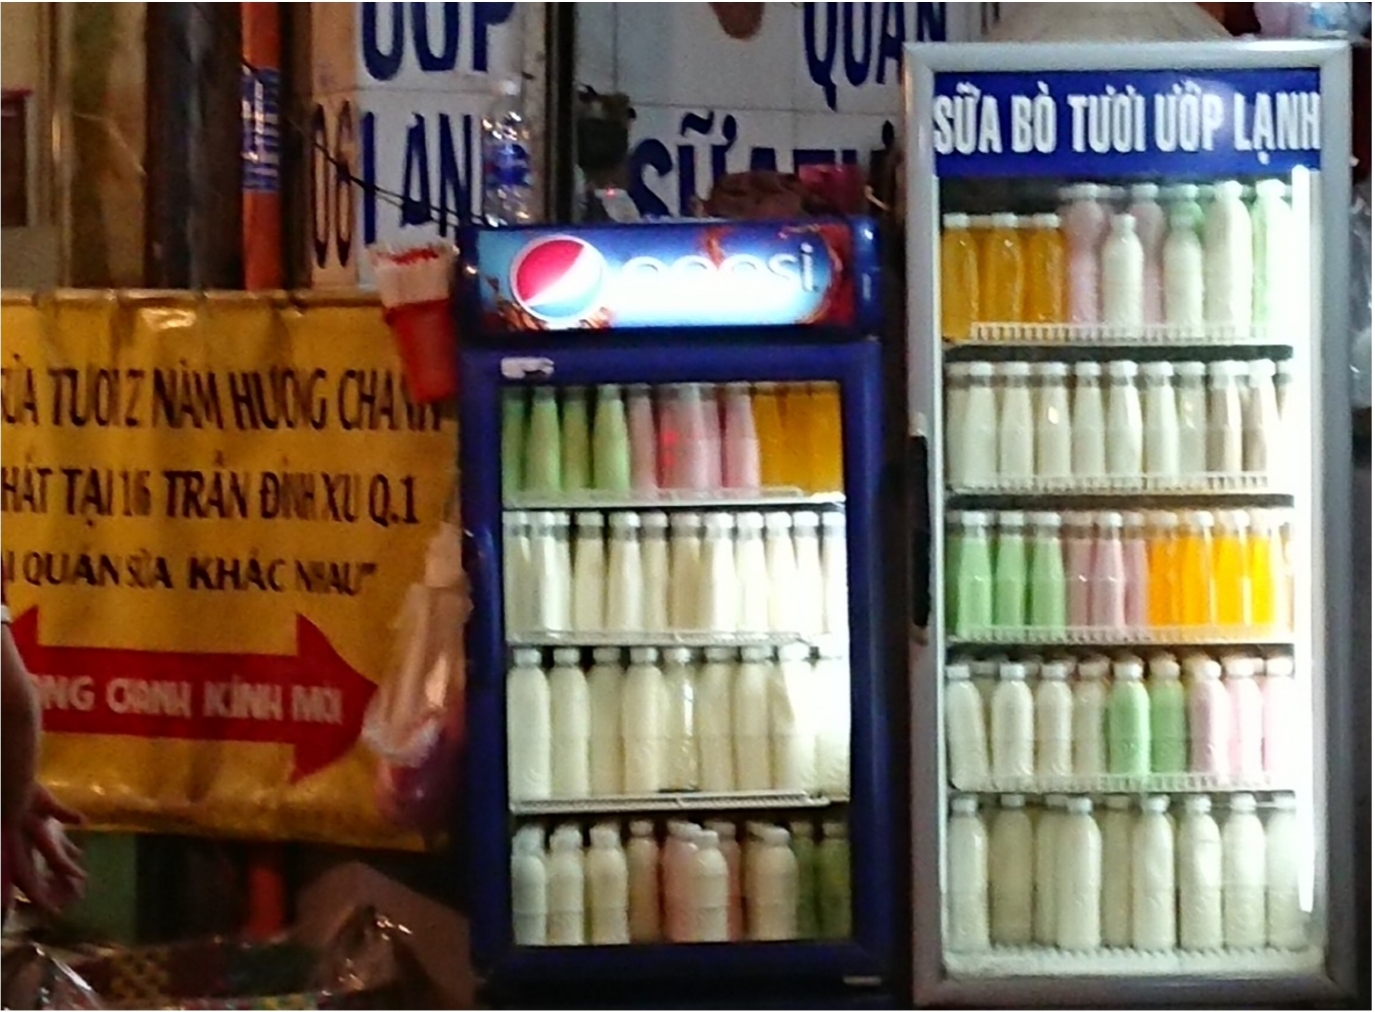 Quận 1,TP.HCM: Cửa hàng Hương Chanh bị tố bán sữa bò tươi 3 không?